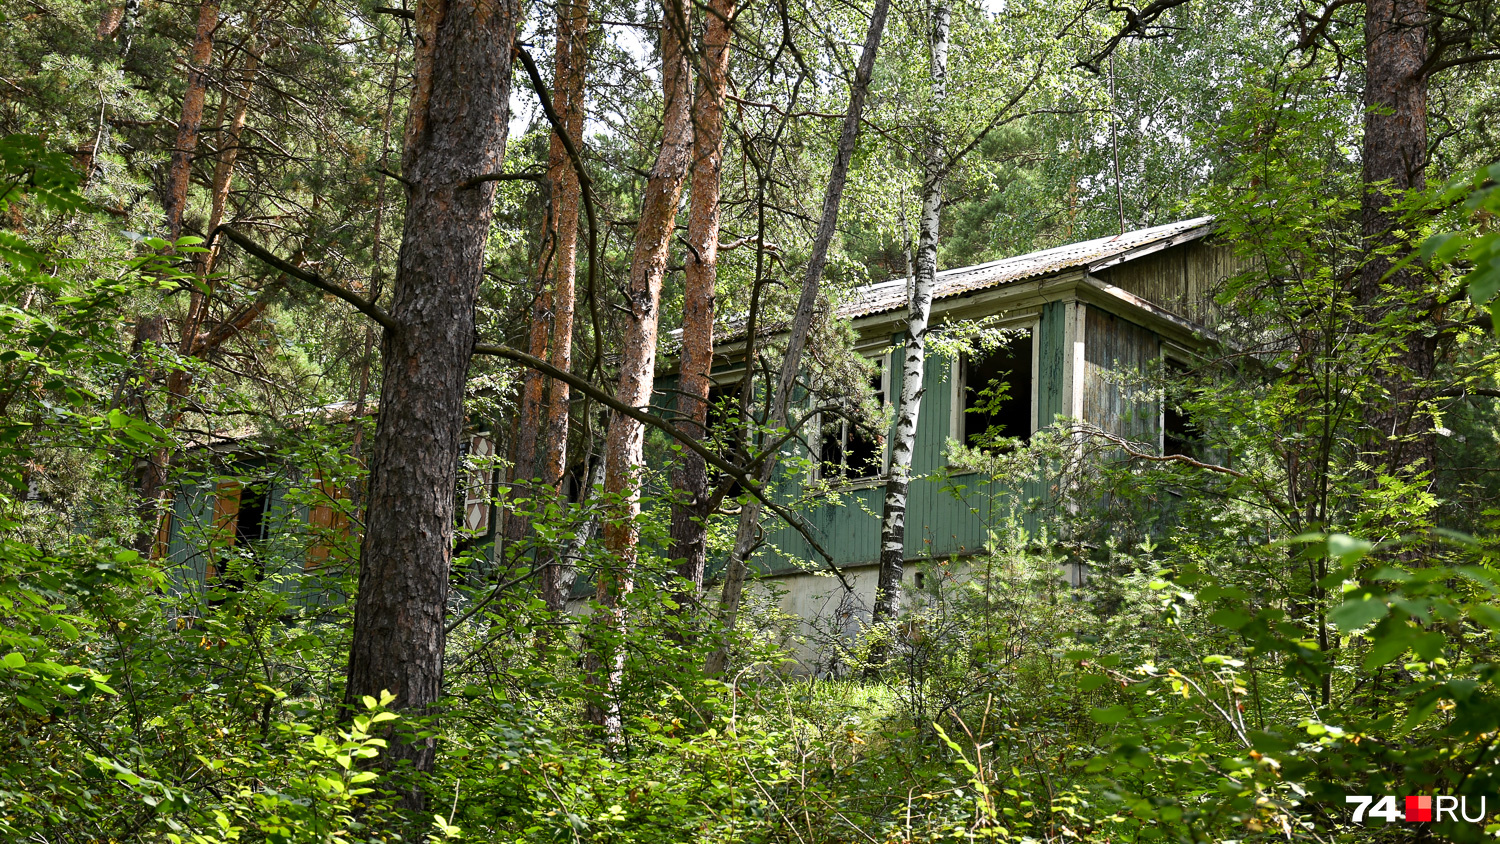 От пионерлагеря ЧТЗ остались считанные постройки, включая этот жилой корпус, еле видимый среди леса